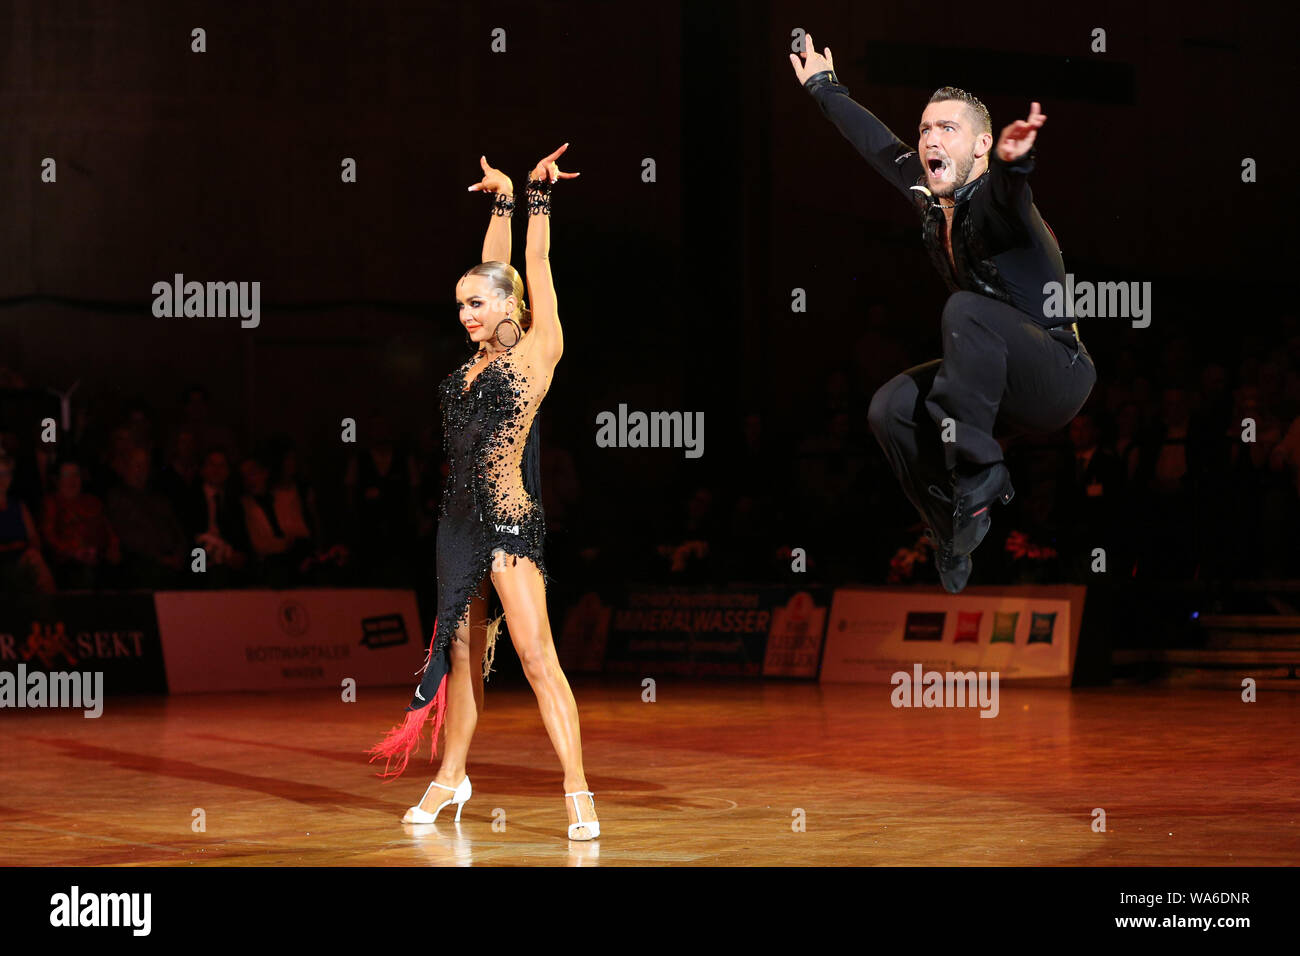 17 de agosto de 2019, Alemania (alemán), Stuttgart: Timur Imametdinov y Nina Bezzubova de Alemania están bailando en el 33º Campeonato abierto alemán (GOC). El par de Bremen bailó plata en el Grand Slam de América. Foto: Catherine Simon/dpa Foto de stock